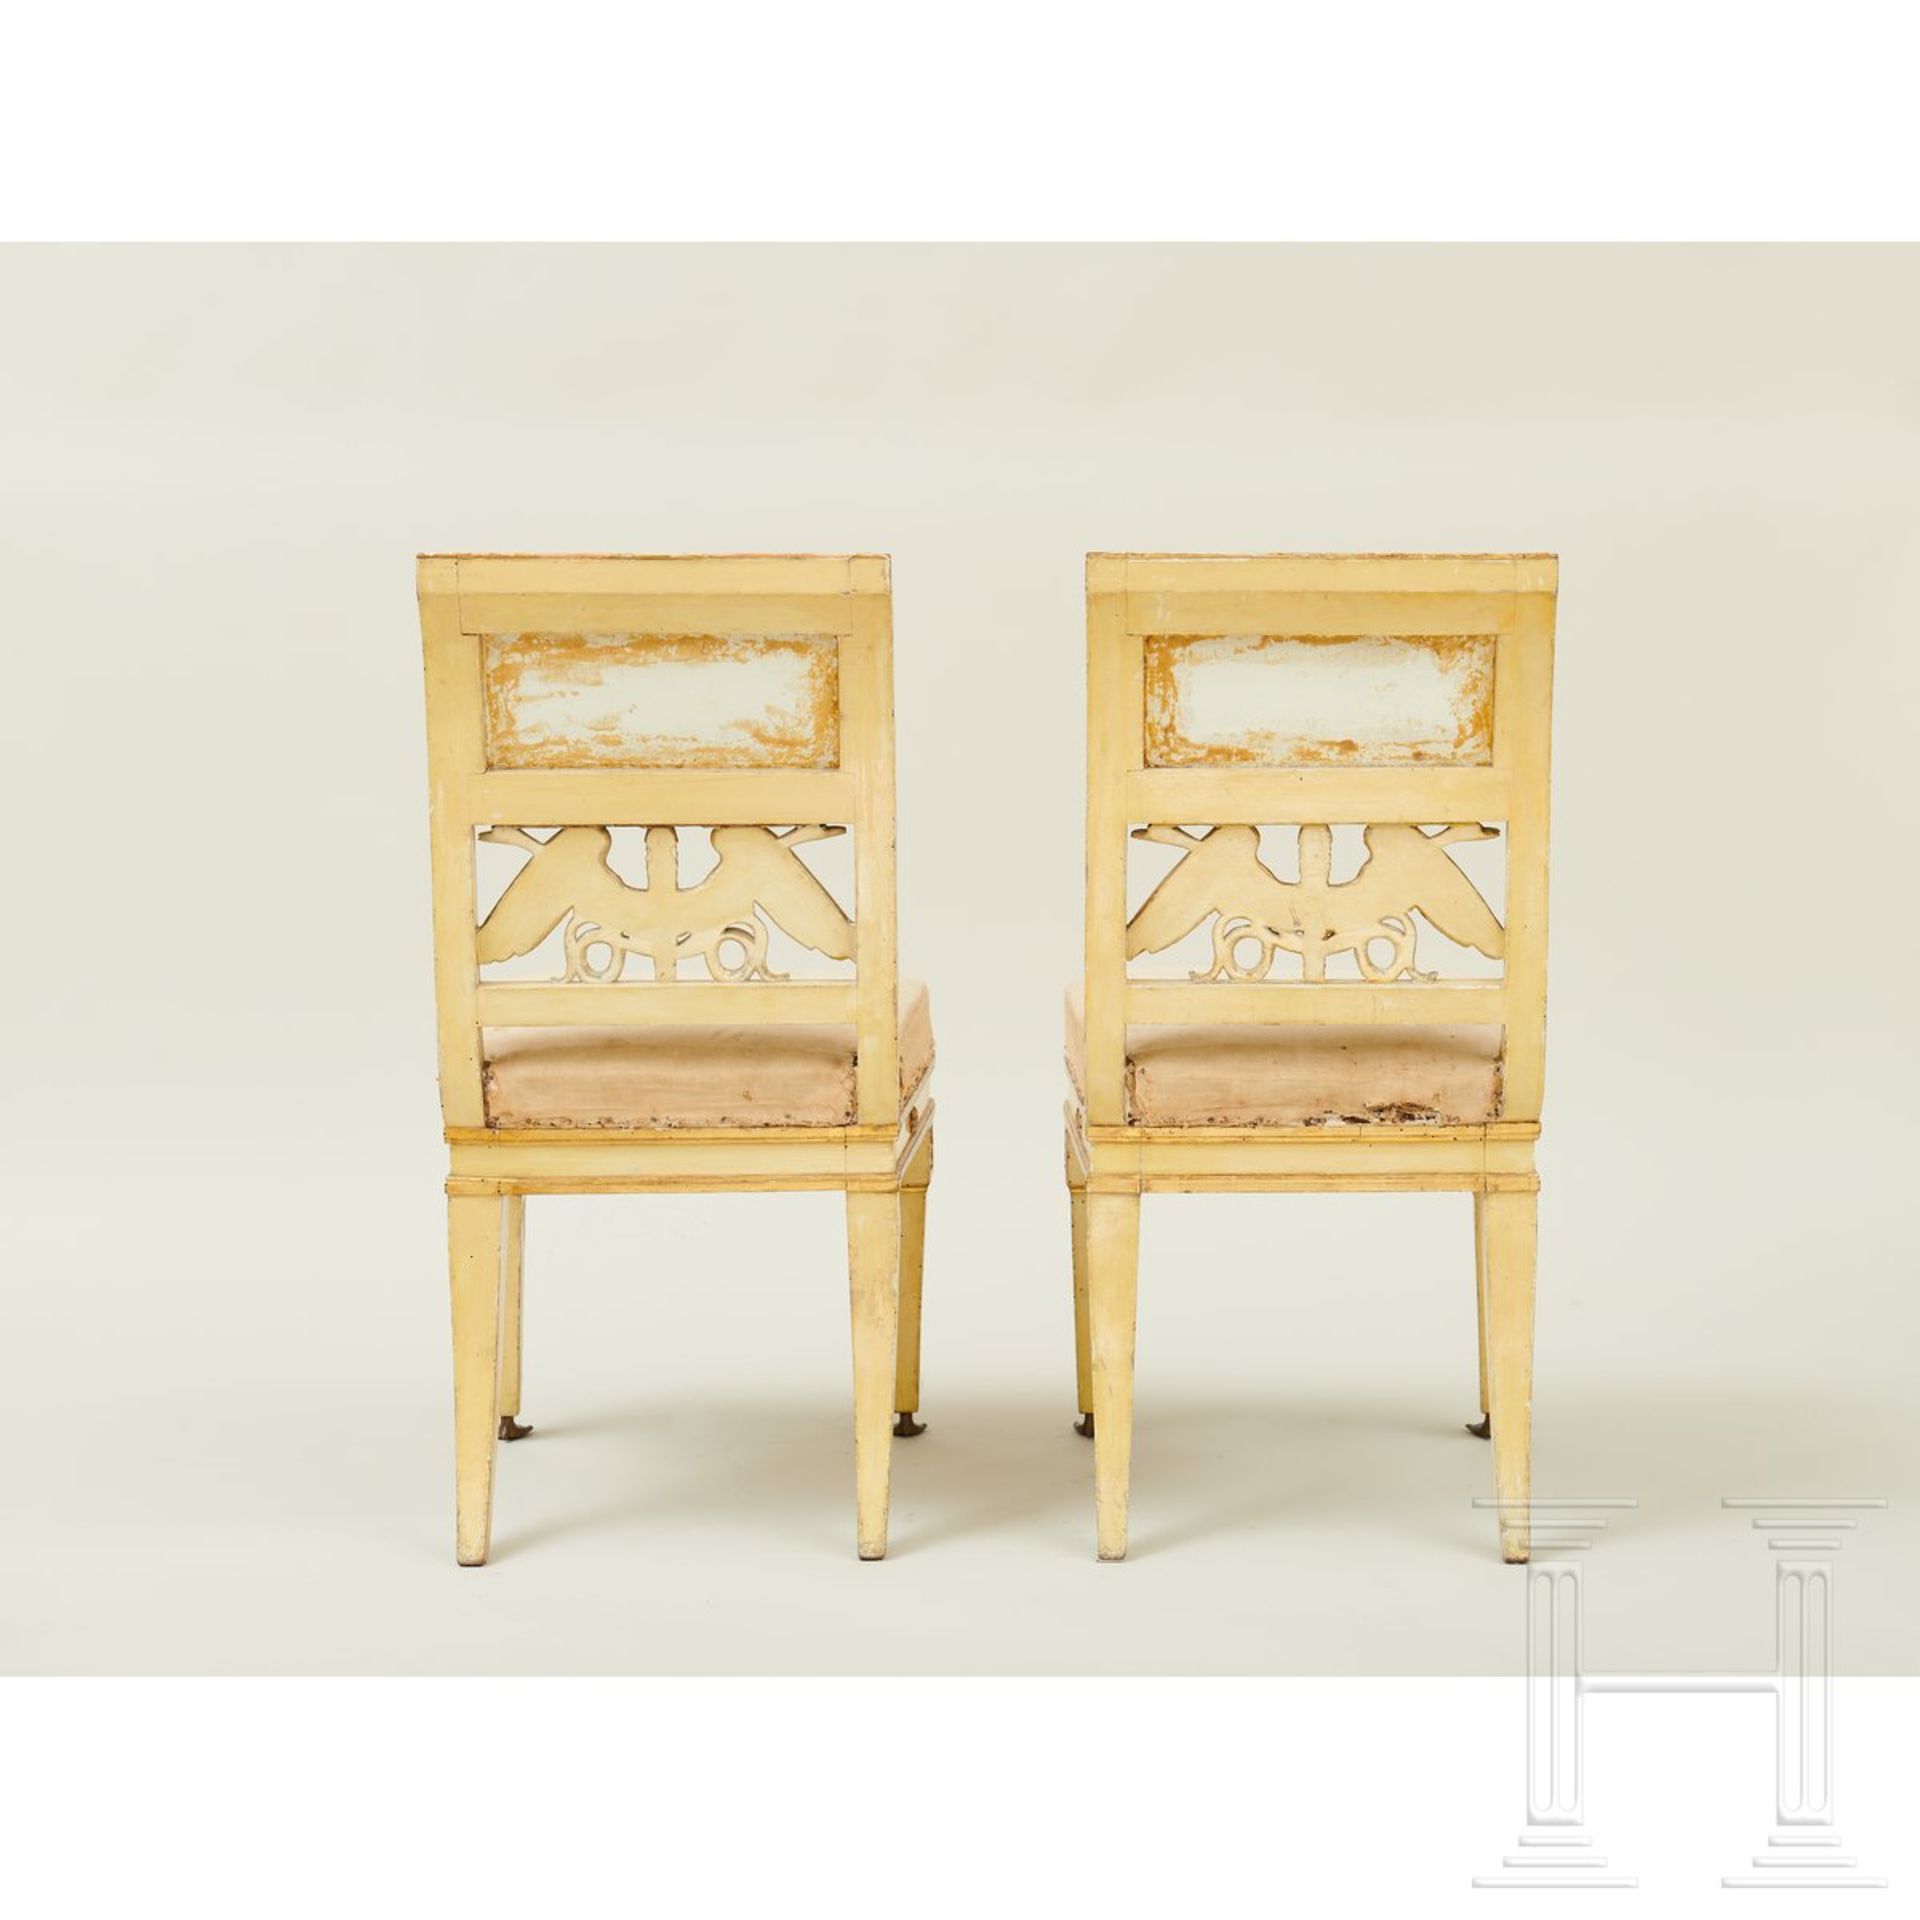 Ein Paar klassizistische Stühle, Lucca, um 1800 - Image 10 of 16